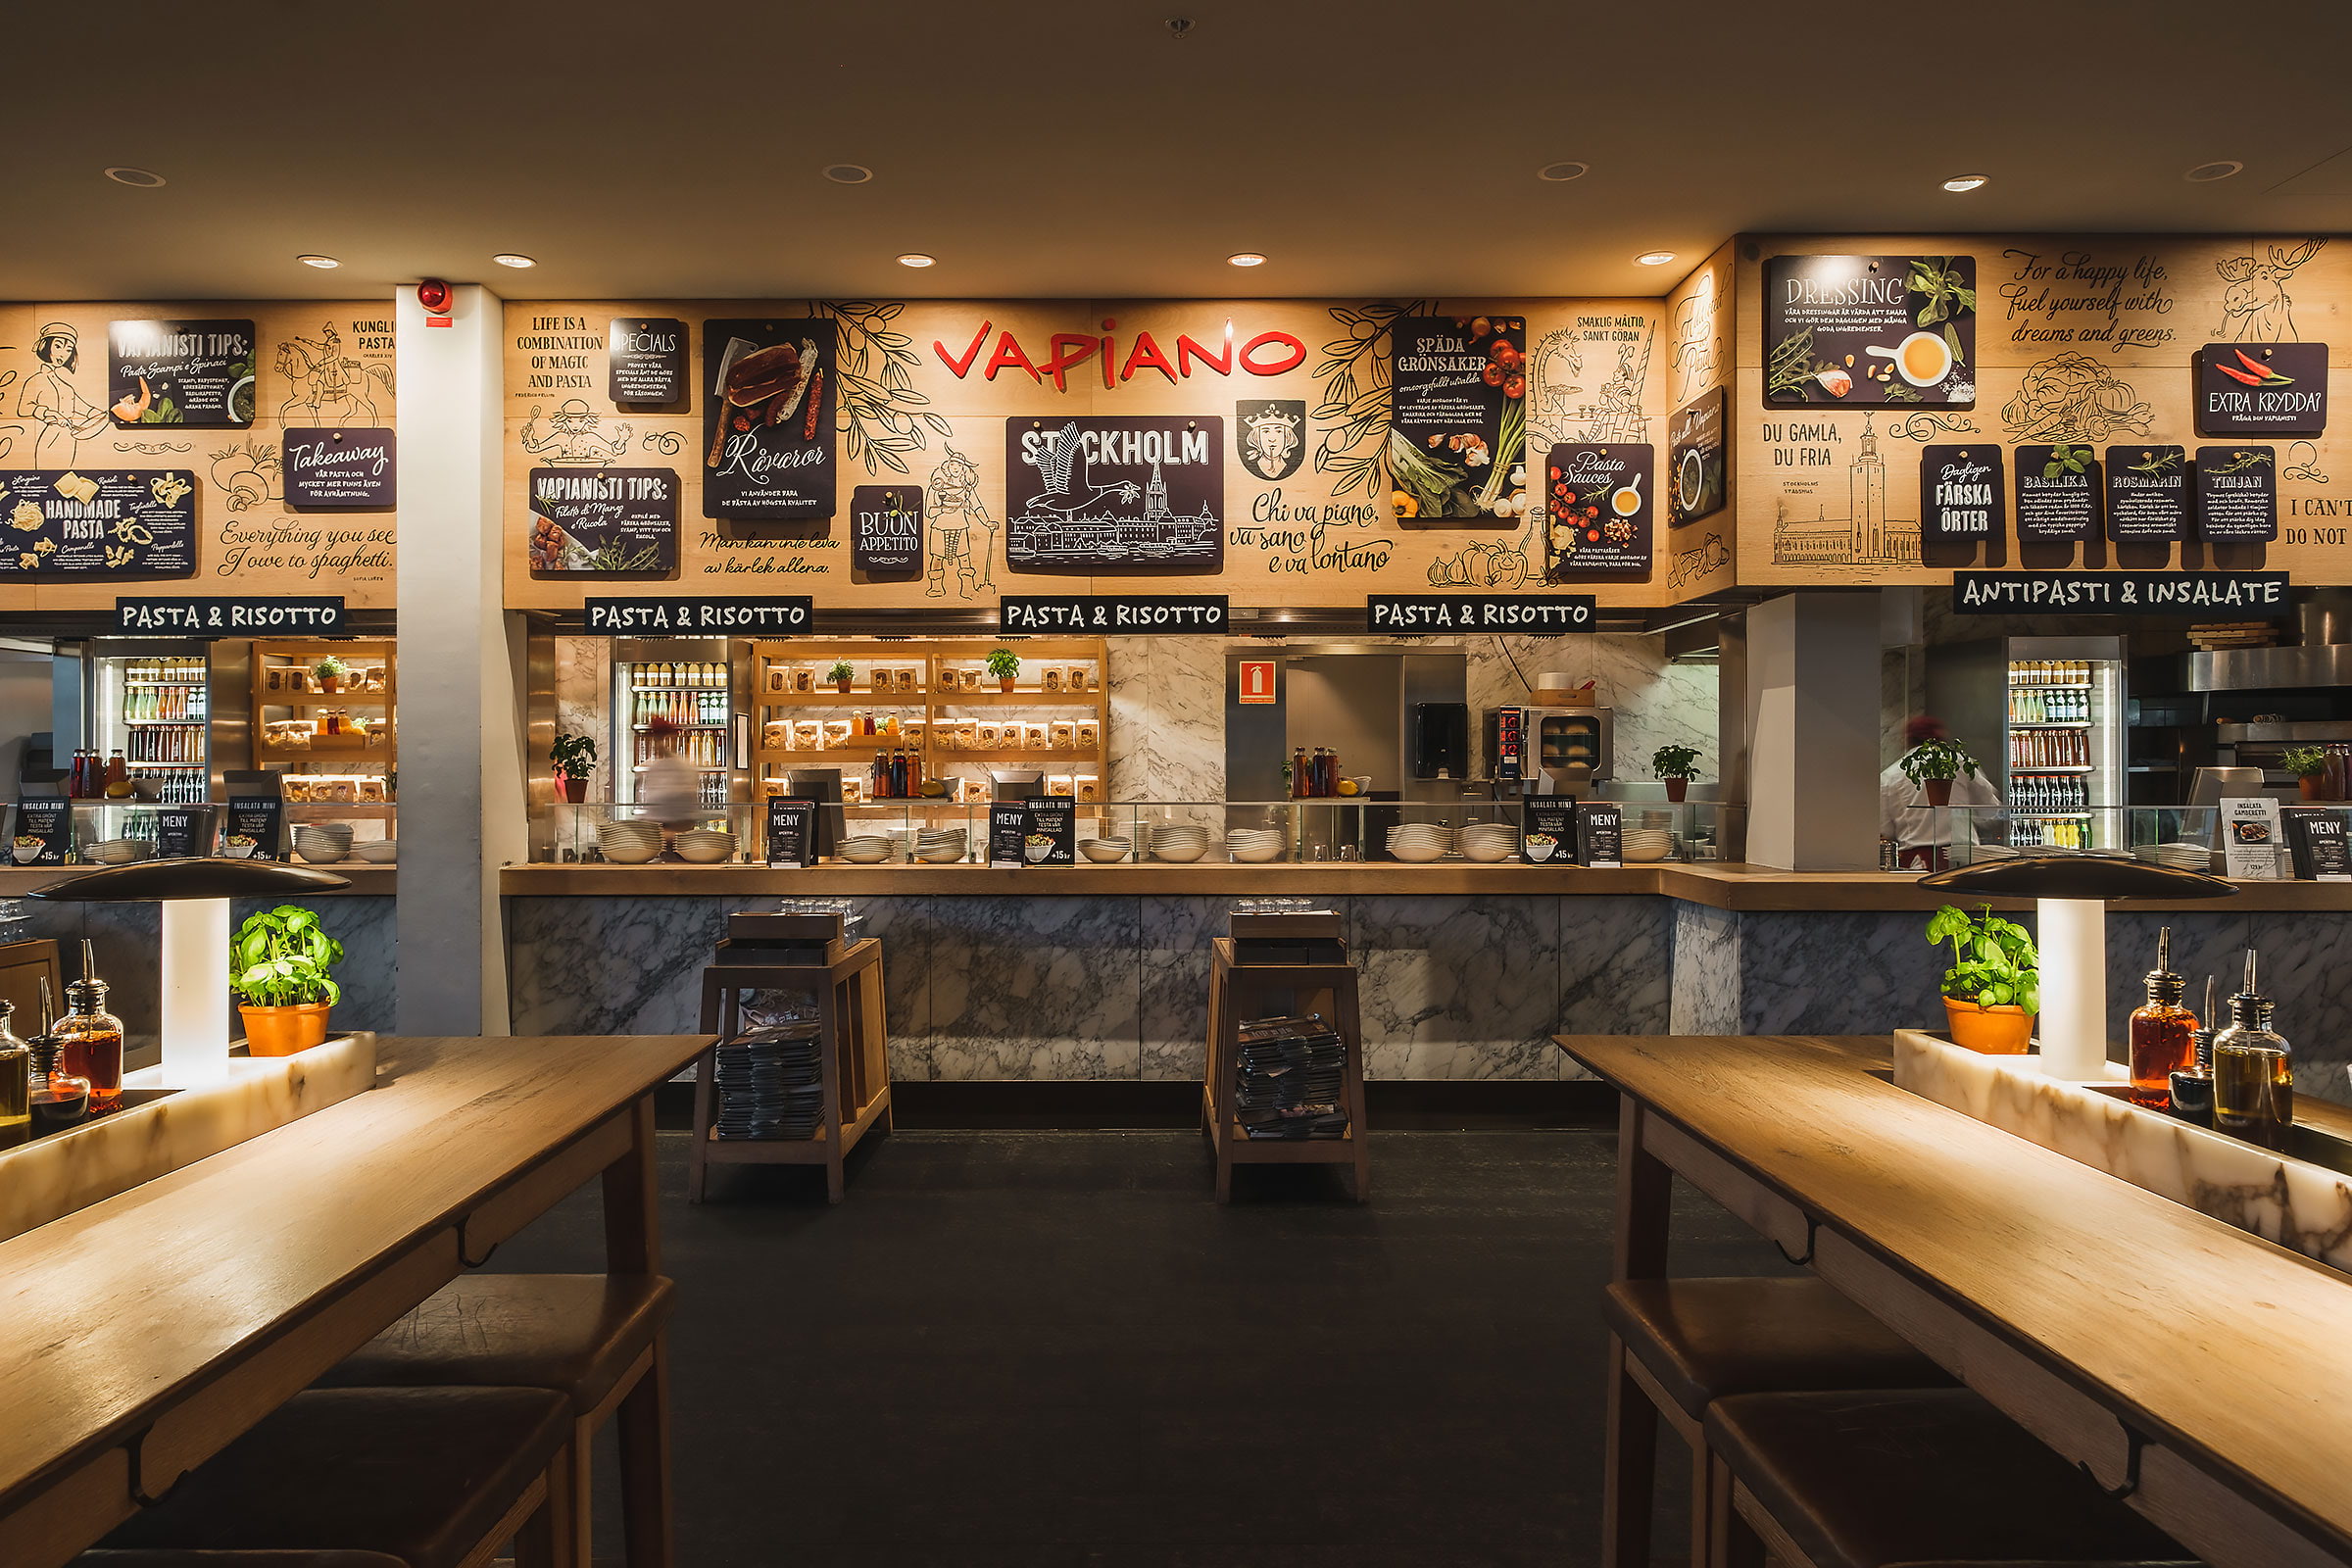 Vapiano i Sverige i konkurs – restaurangerna till salu